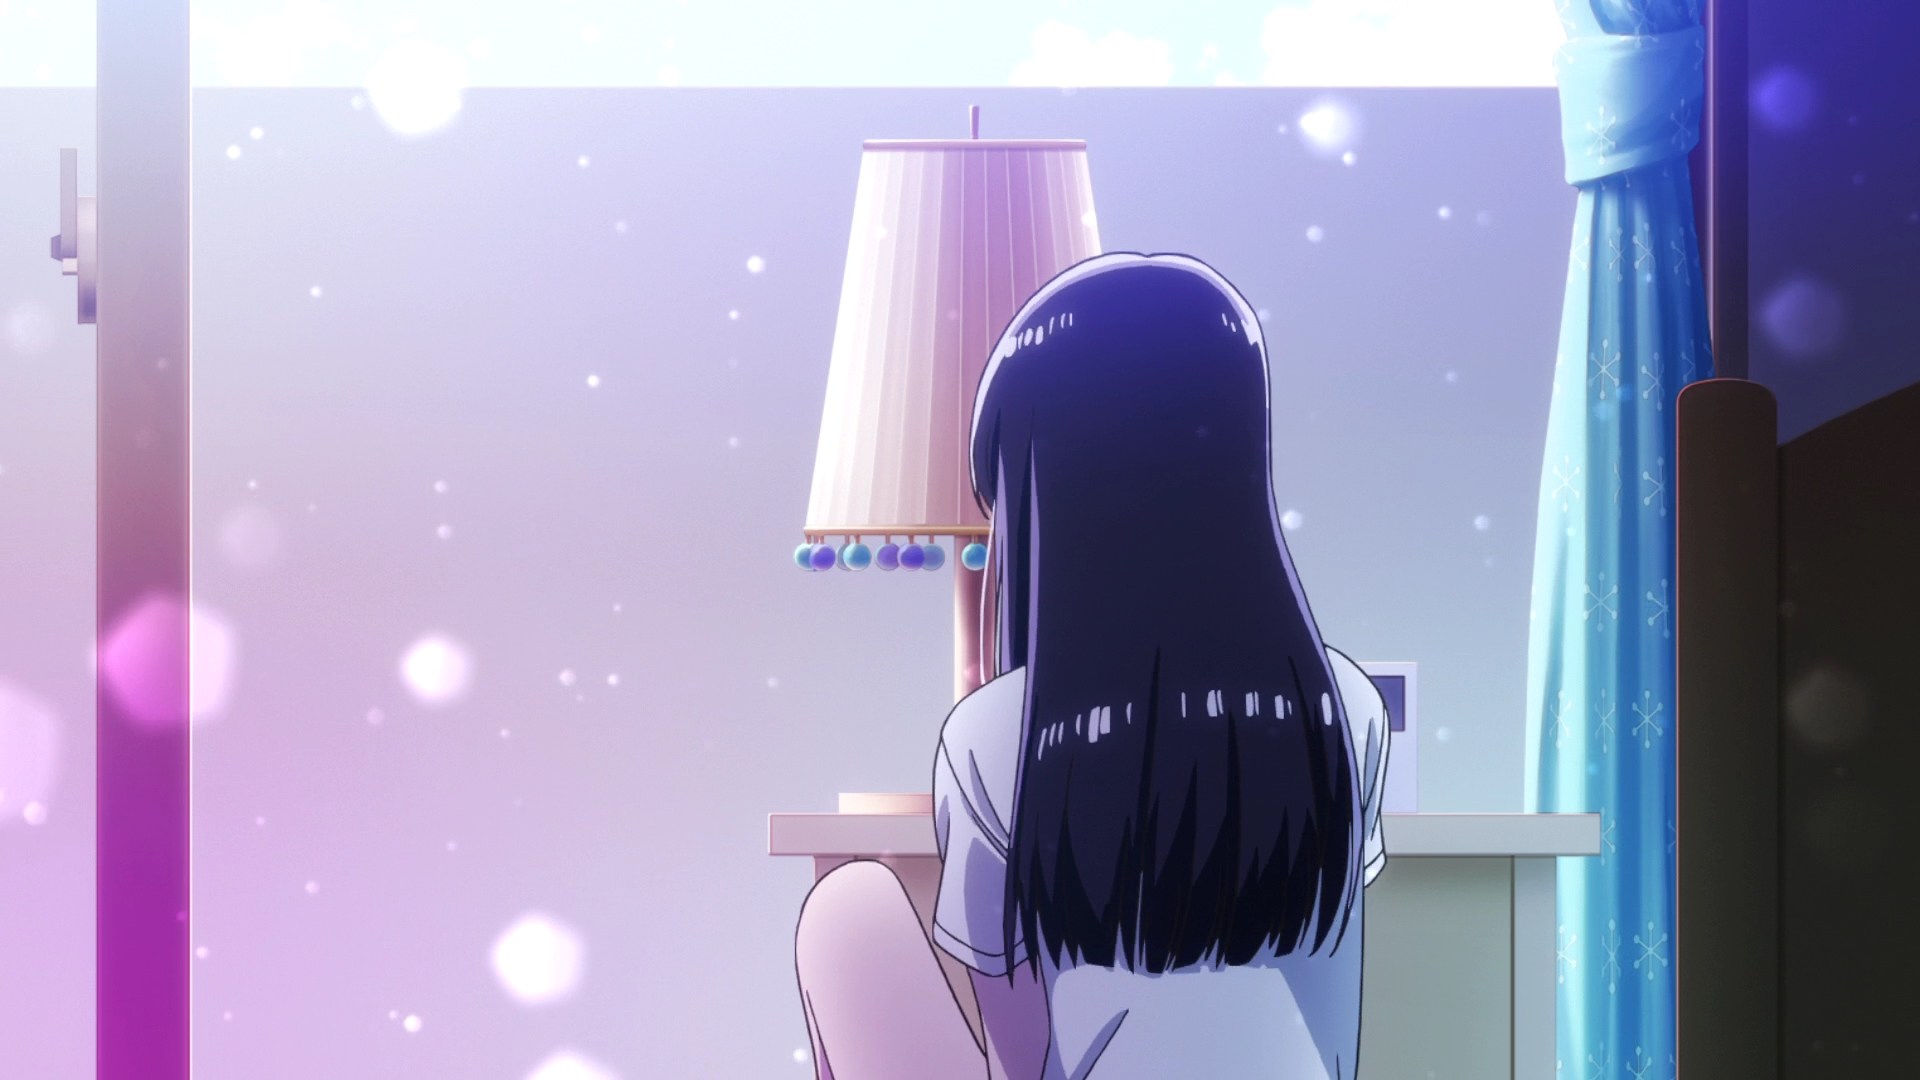 Anime 1920x1080 After the Rain anime anime girls dark hair long hair women indoors